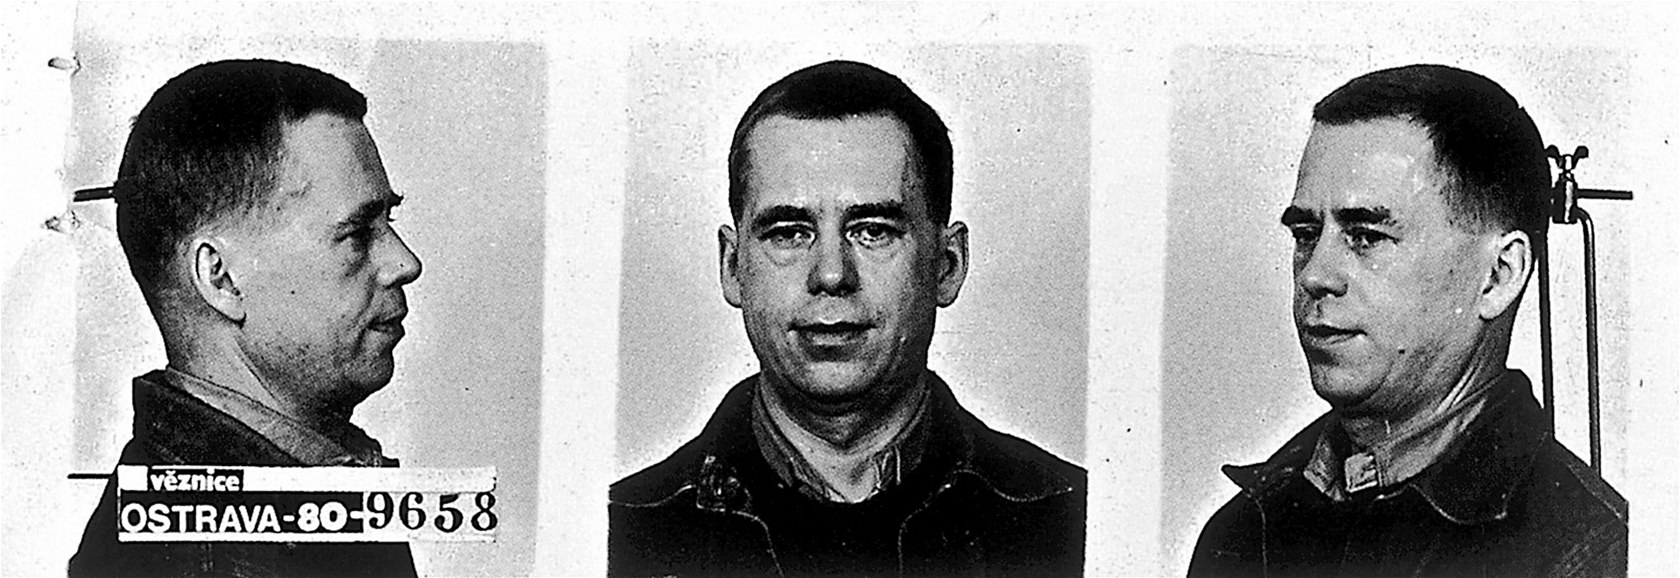 Václav Havel strávil ve vìznici v Ostravì-Heømanicích na pøelomu 70. a 80. let